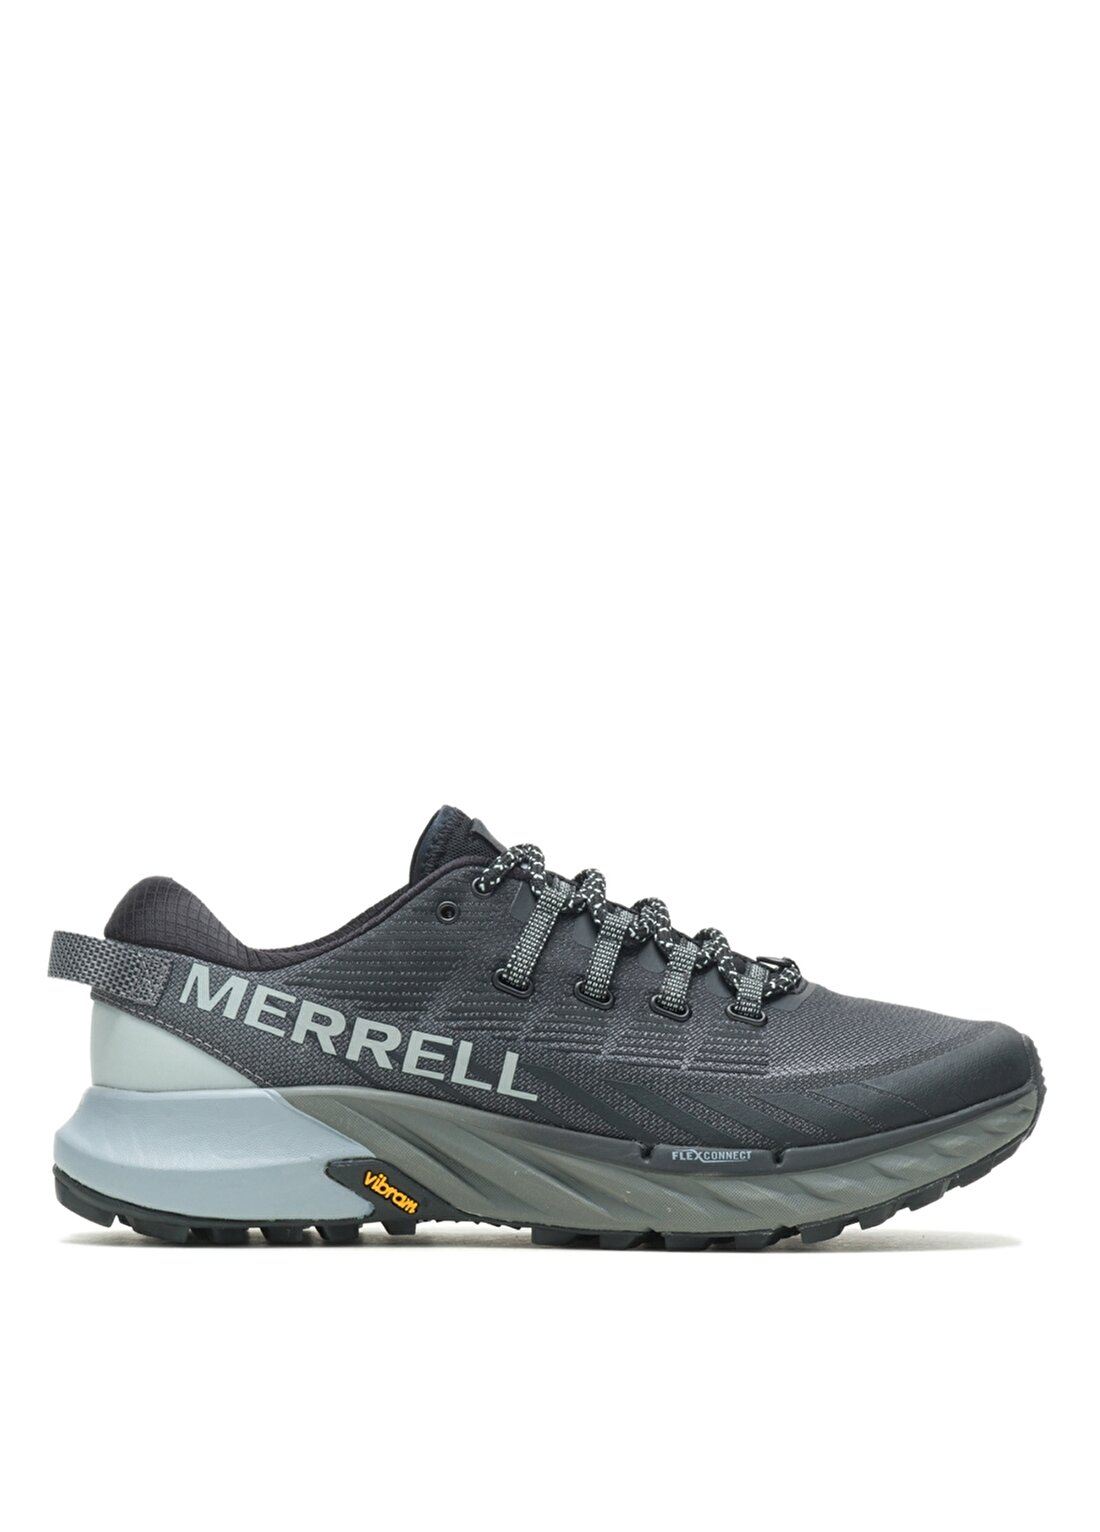 Merrell Siyah Erkek Outdoor Ayakkabısı J135107 10010 AGILITY PEAK 4